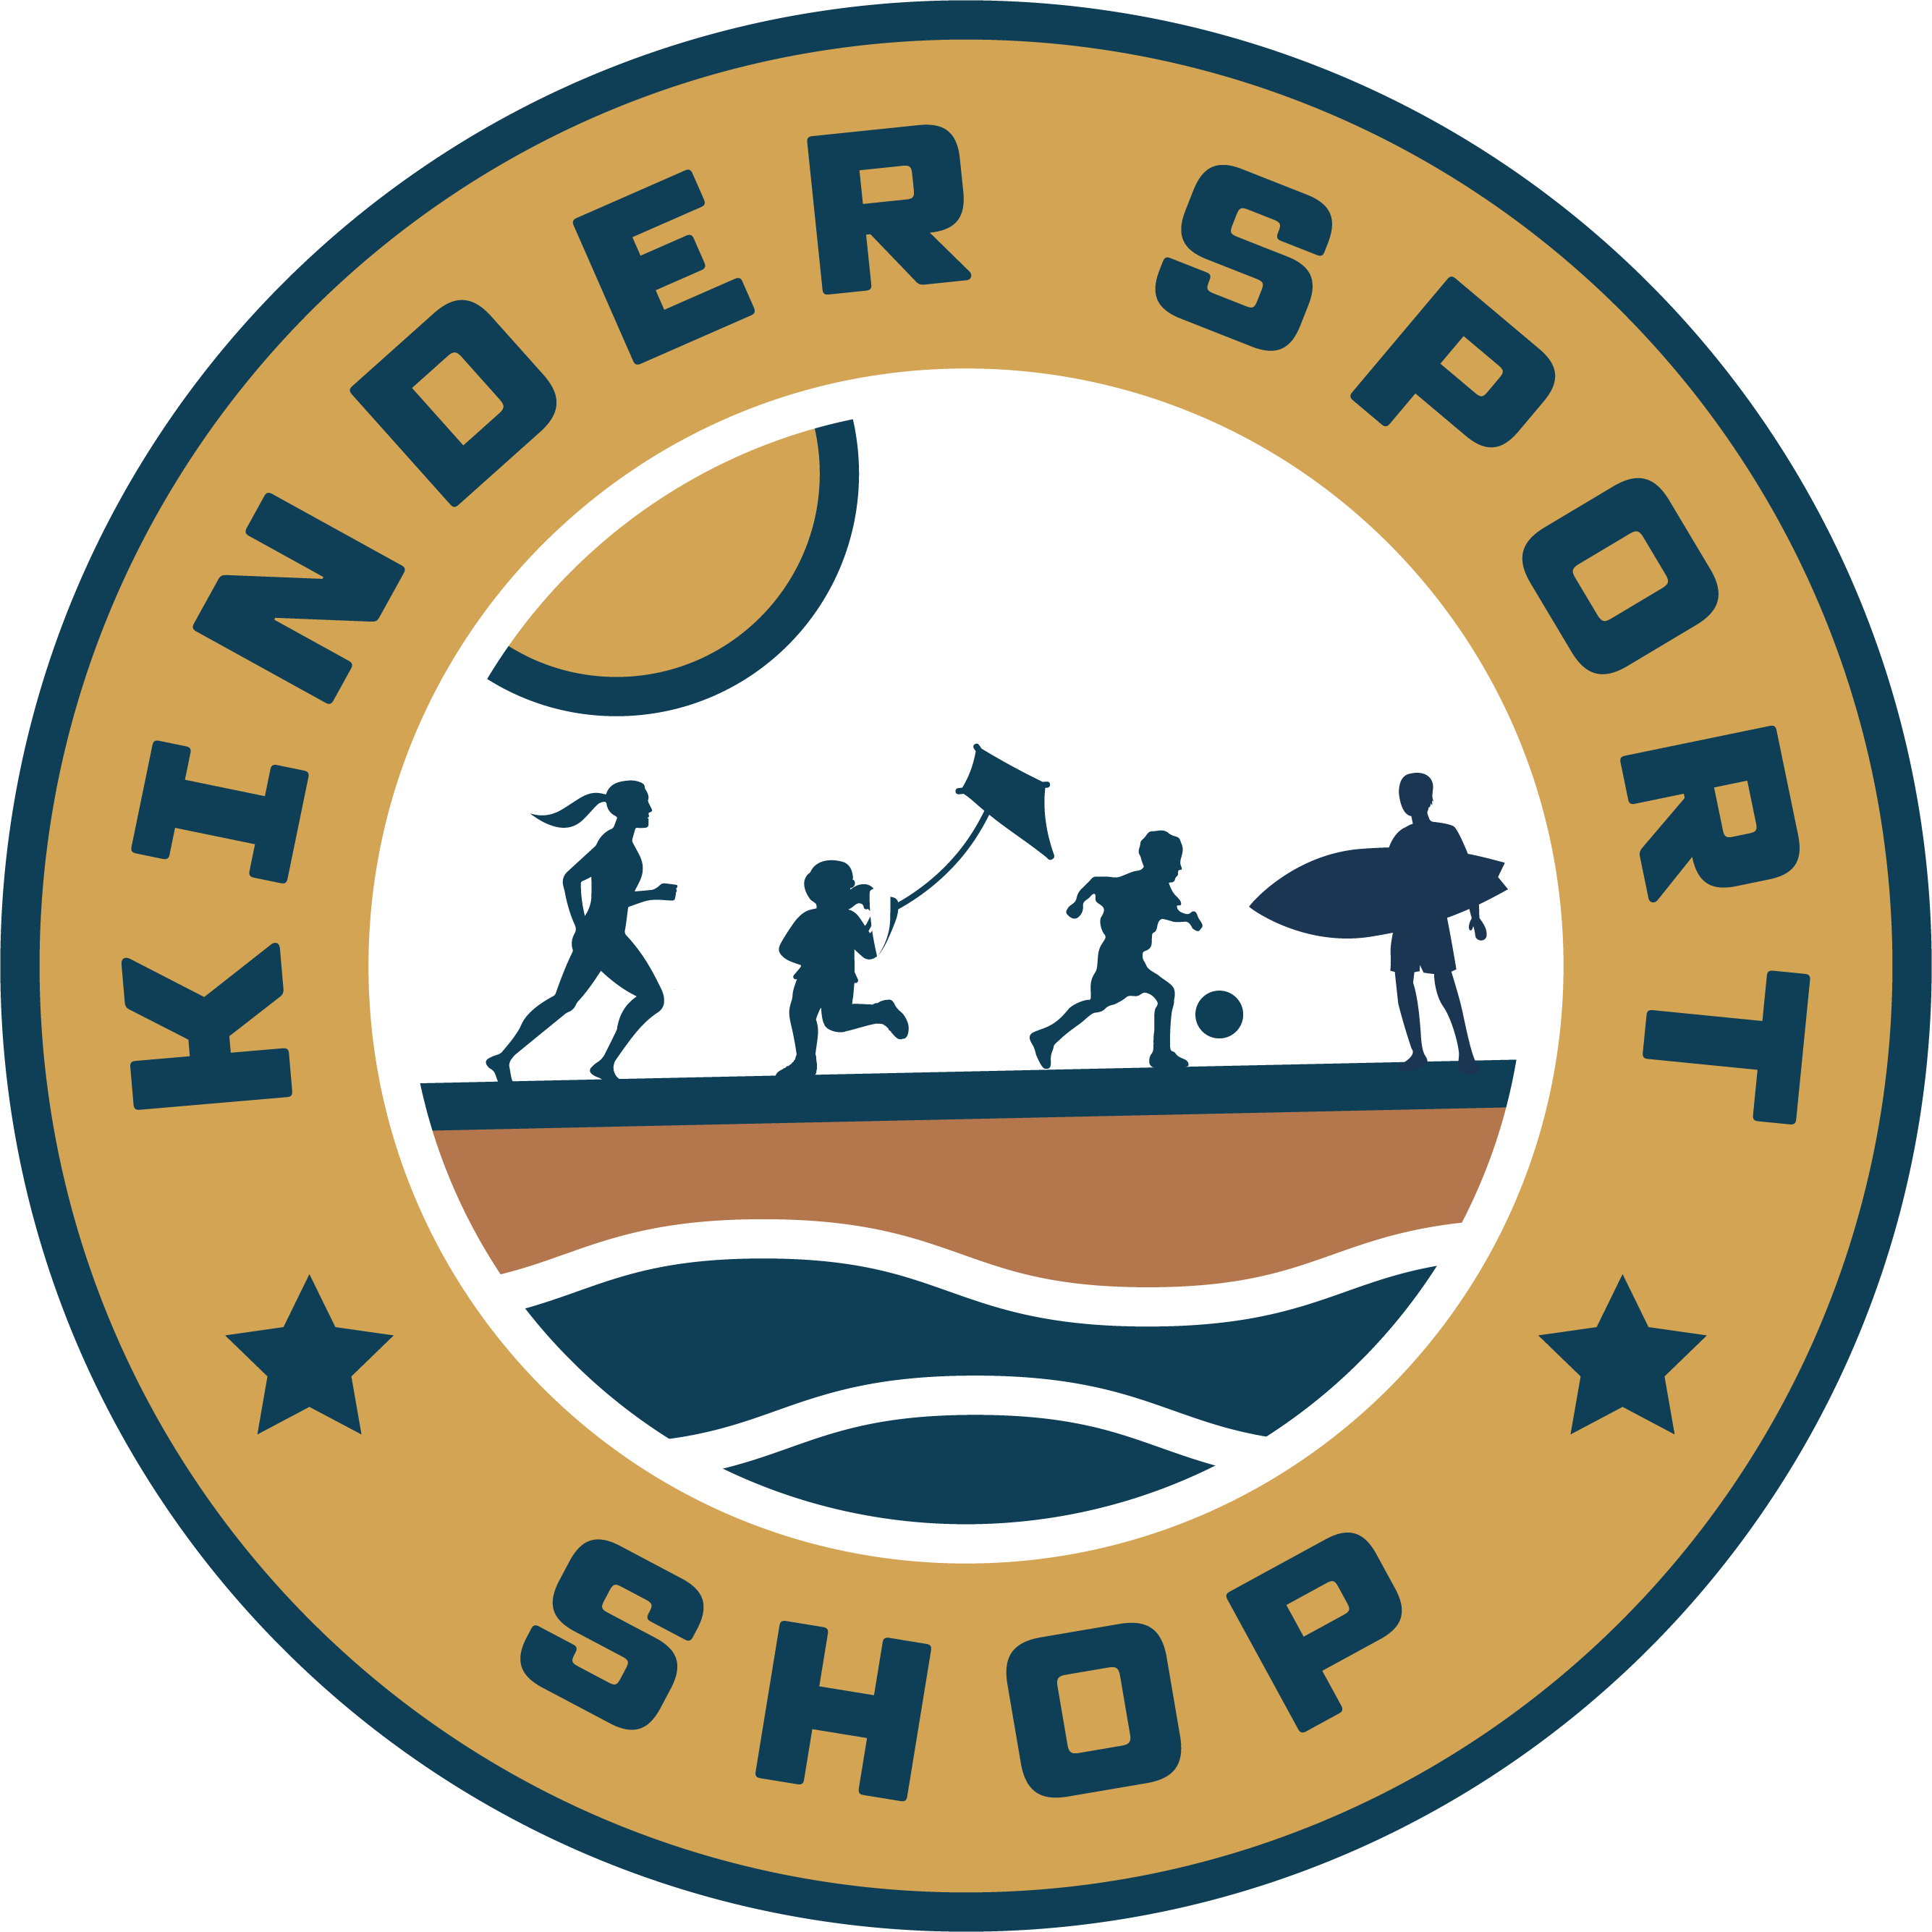 Kindersport Shop